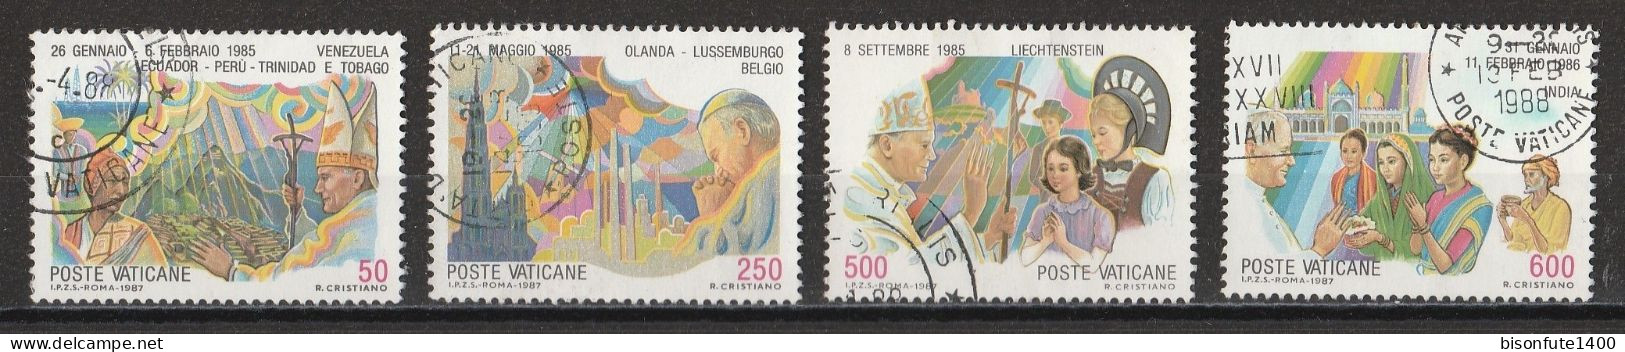 Vatican 1987 : Timbres Yvert & Tellier N° 817 - 818 - 820 - 821 - 822 - 823 Et 824 Oblitérés. - Gebruikt